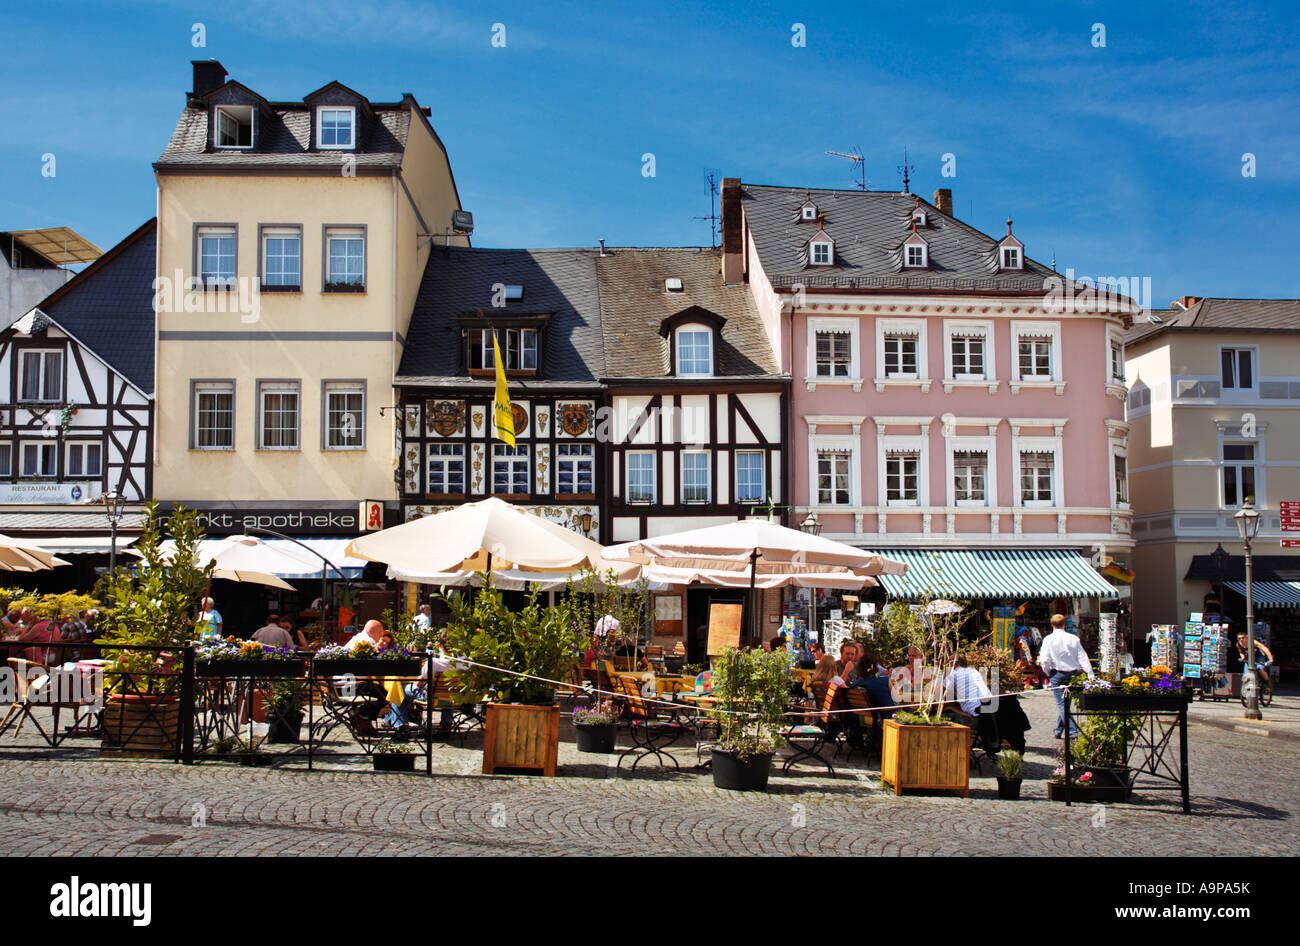 Deutschland, Rheinland - Fachwerkhäuser, Cafés und Geschäfte auf dem Marktplatz in Boppard am Rhein, Rhein, Deutschland Stockfoto